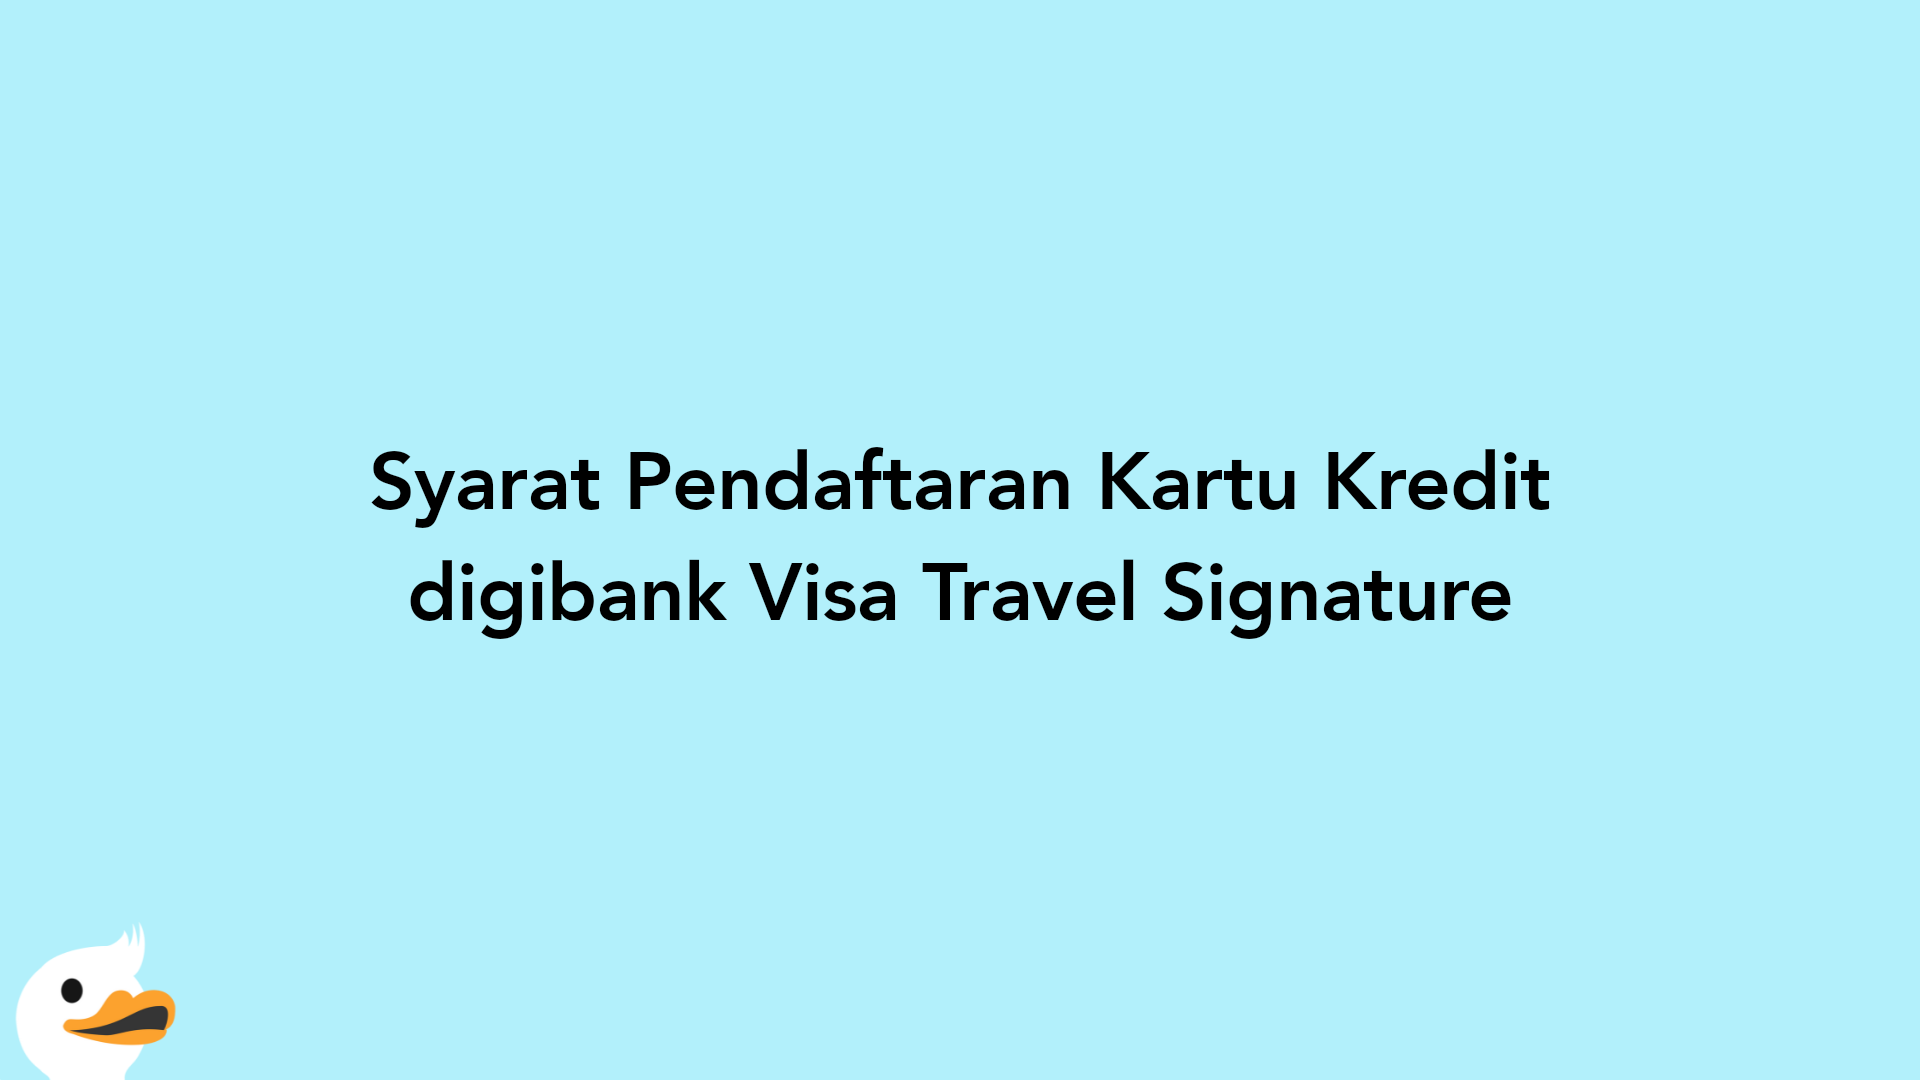 Syarat Pendaftaran Kartu Kredit digibank Visa Travel Signature